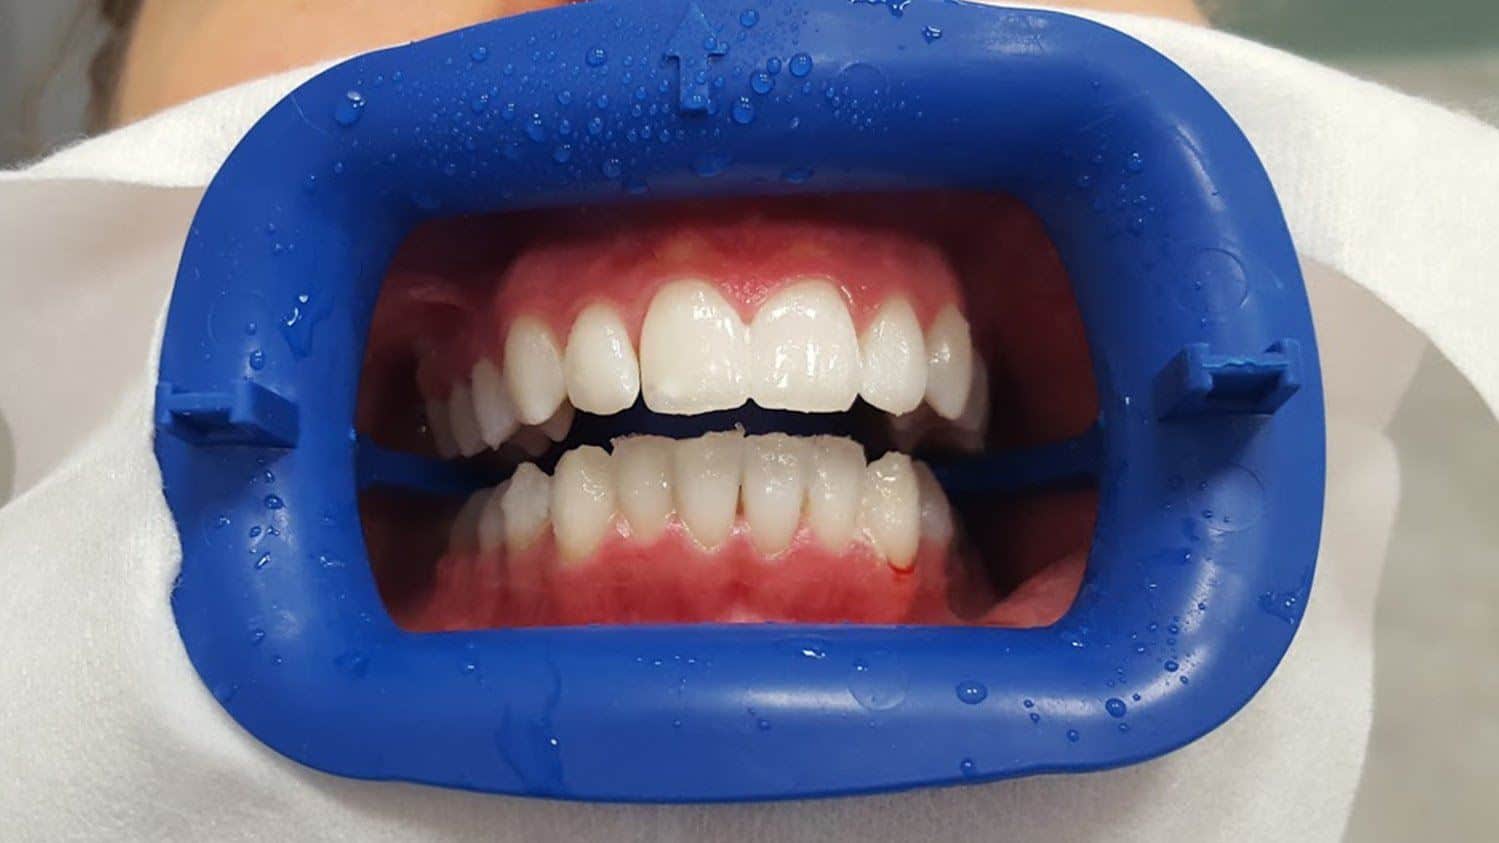 Sbiancamento dentale professionale per denti macchiati e ingialliti: scopri cause e soluzioni per le macchie sui denti